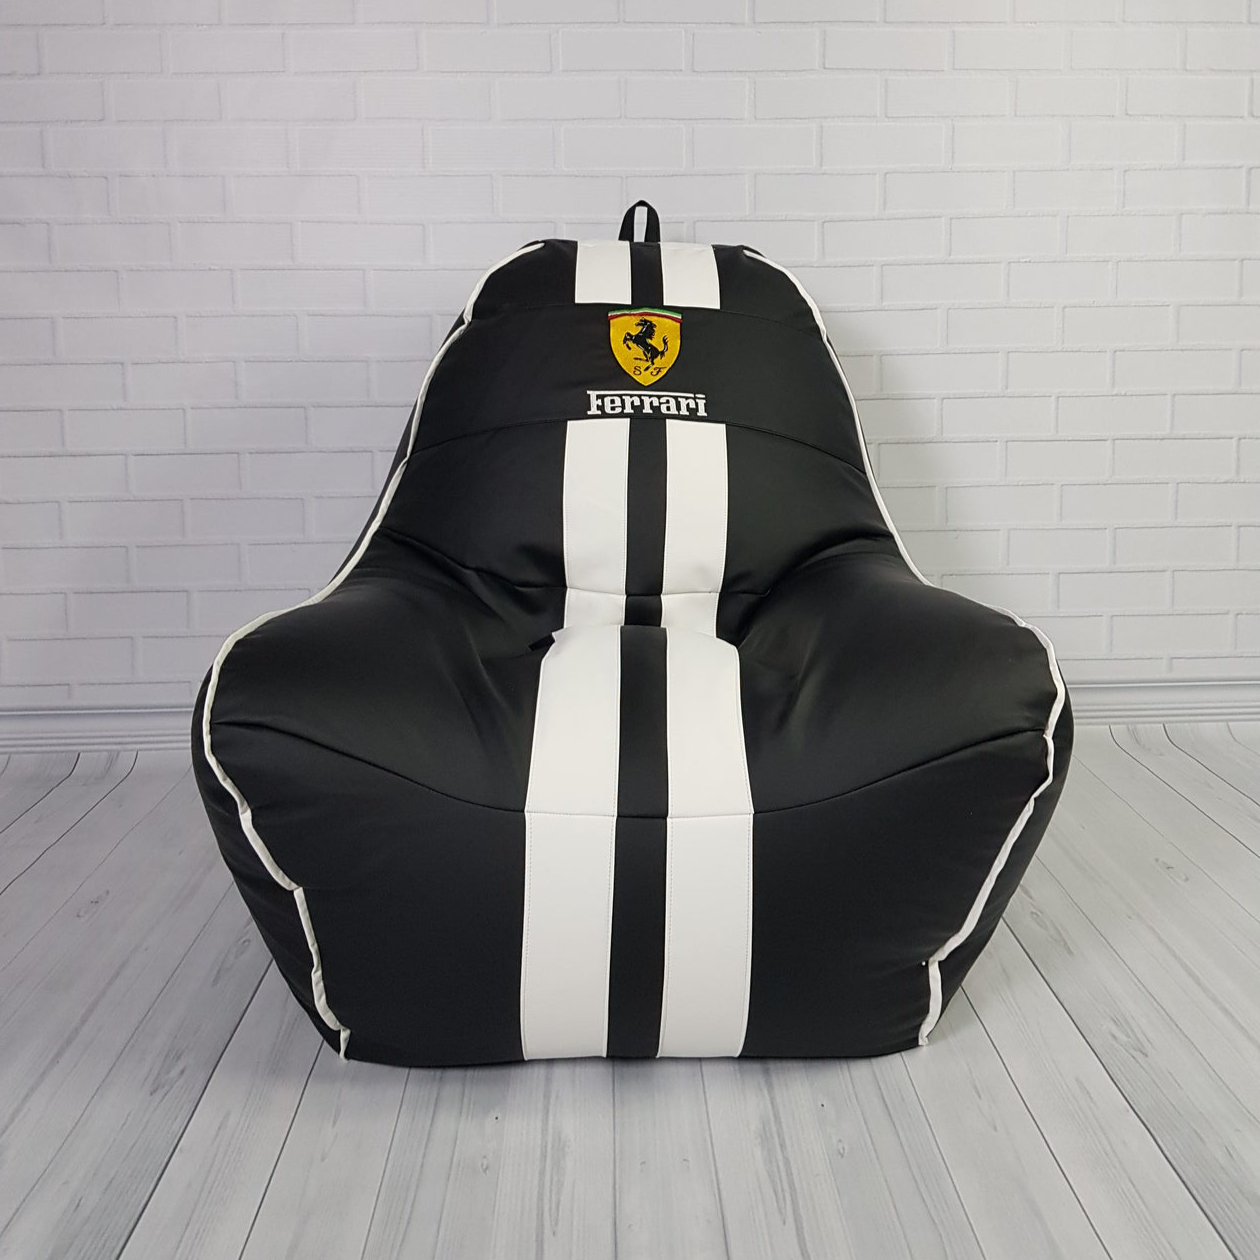 Кресло sport ferrari черный/белый кожзам